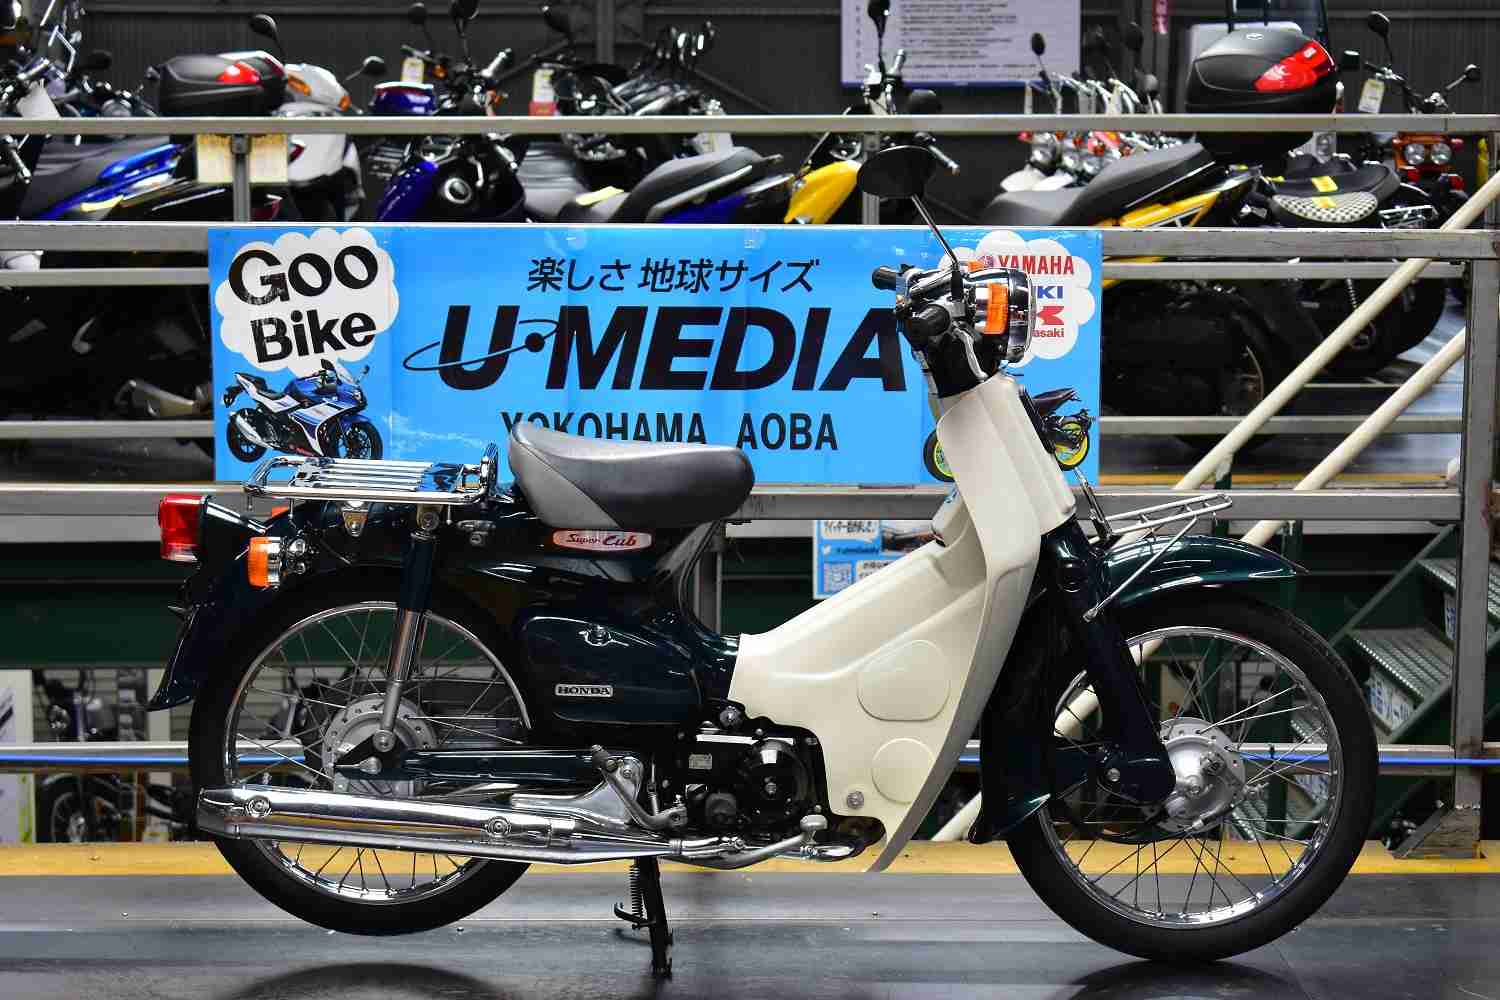 ホンダ スーパーカブ50 バイク探し U Media ユーメディア 中古バイク 新車バイク探しの決定版 神奈川 東京 でバイク探すならユーメディア